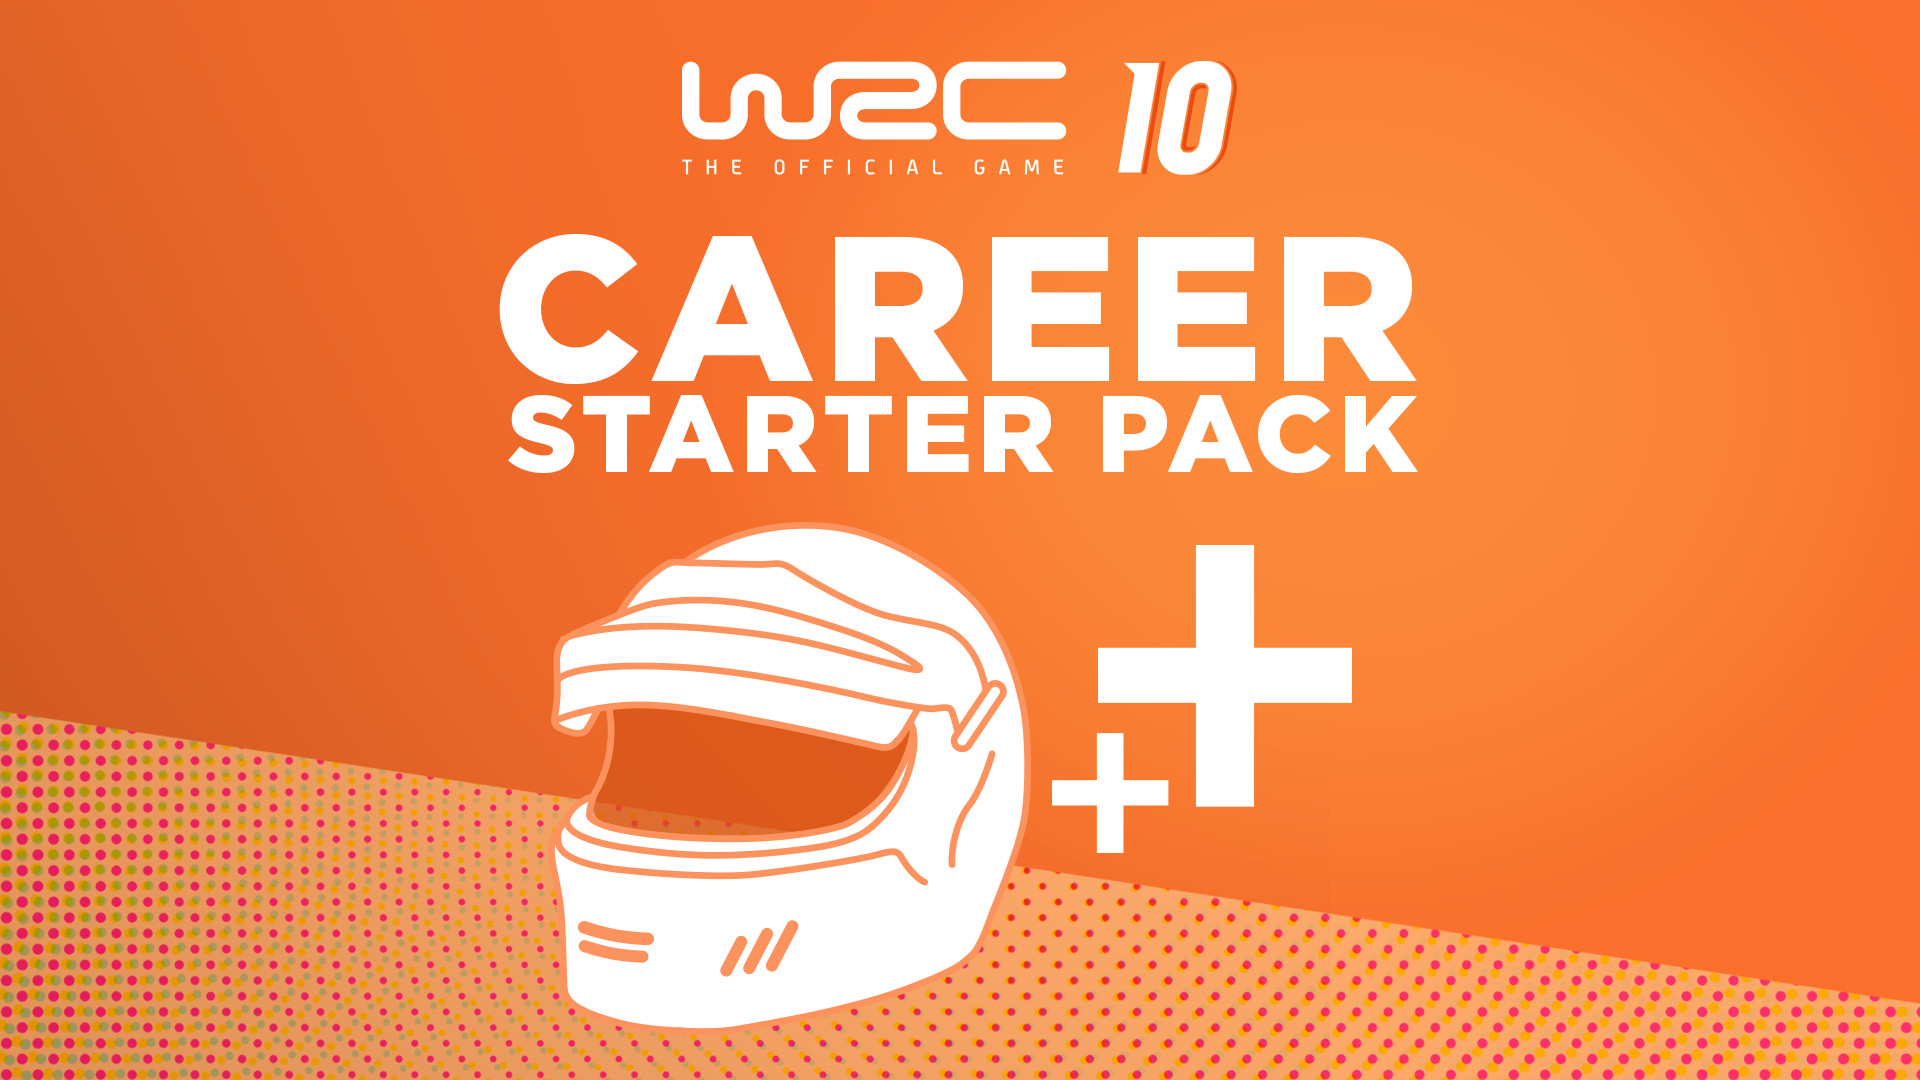 WRC 10 - Career Starter Pack DLC Steam CD Key 2.81 $